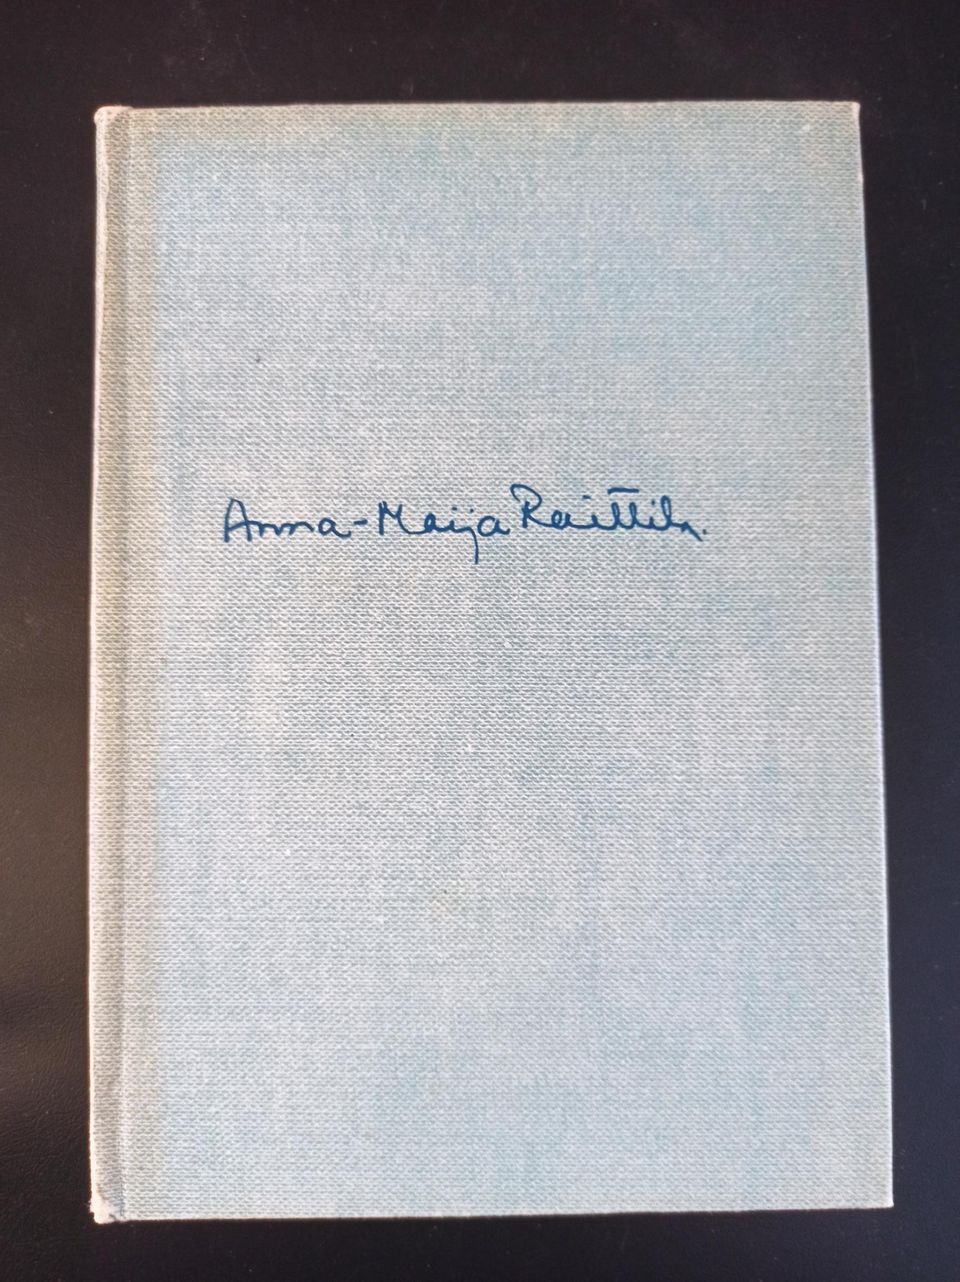 Runoja, Ruiskukkaehtoo, Anna-Maija Raittila, v.1947